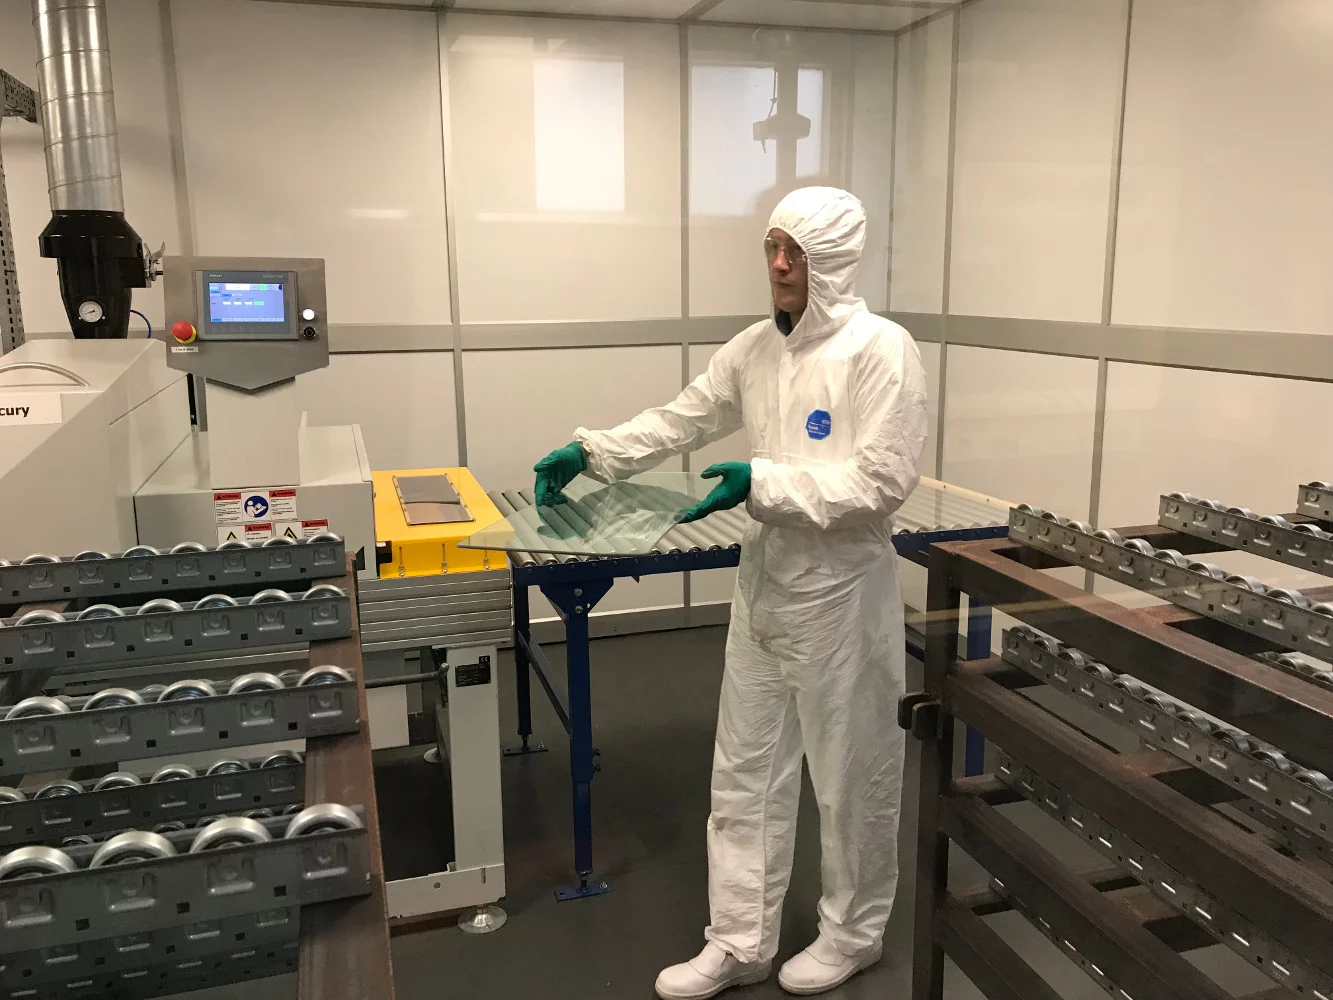 Światowy lider w produkcji szkła przyśpiesza badania nad powłokami antywirusowymi w walce z Covid-19